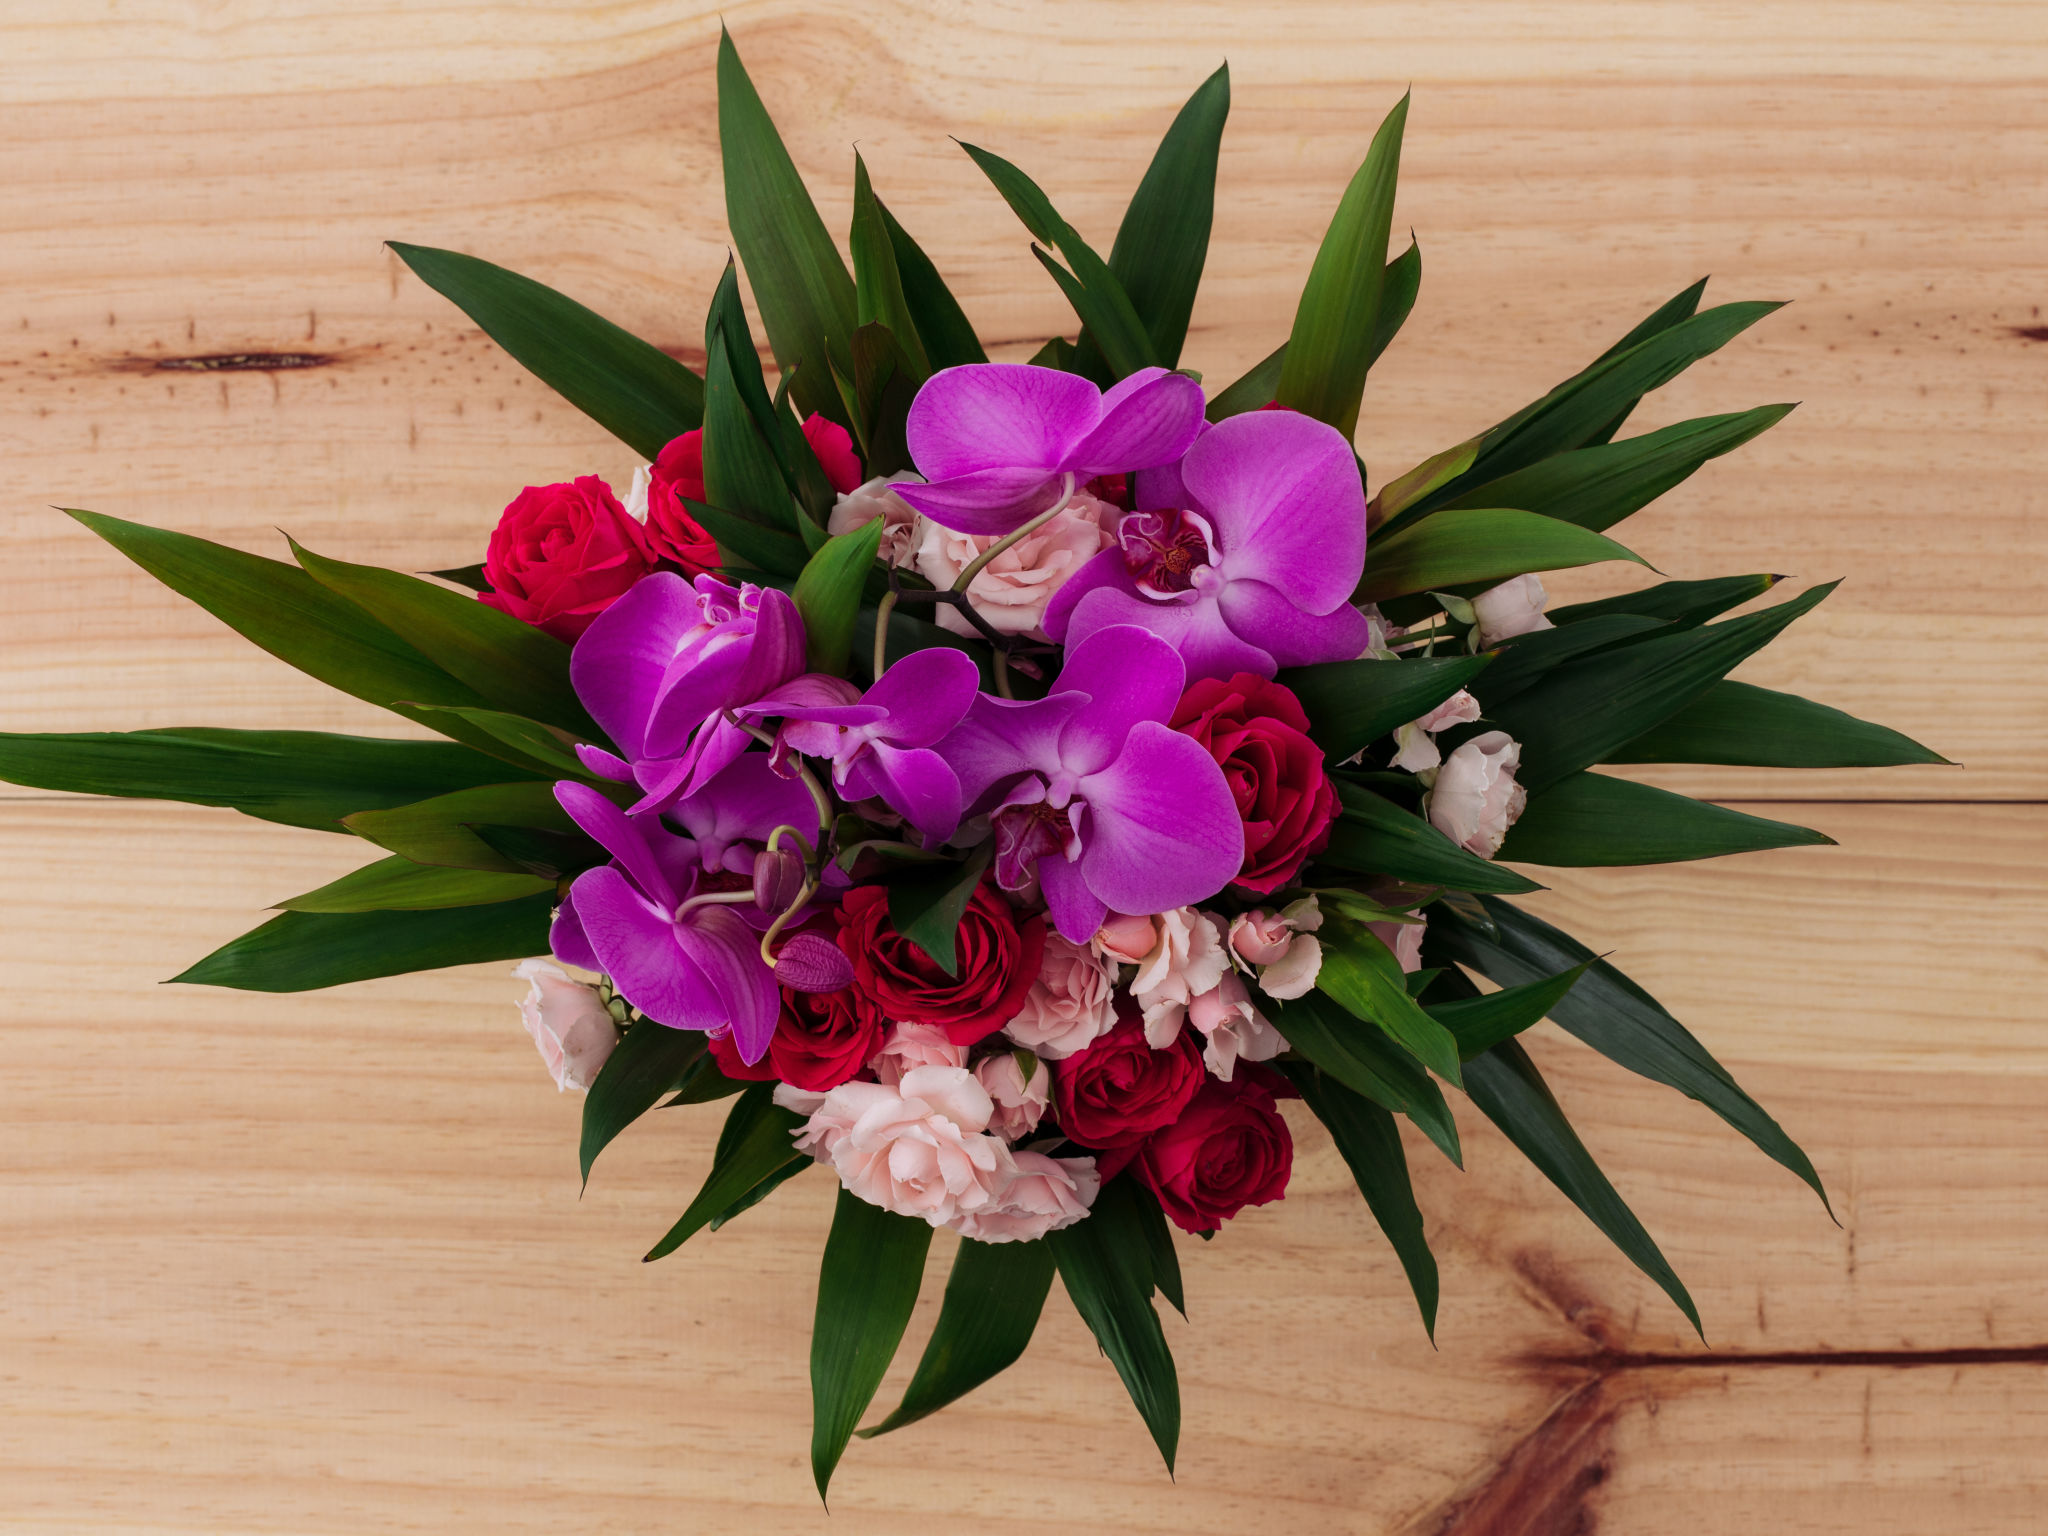 Como cuidar de orquídeas: 4 dicas simples para flores sempre bonitas |  